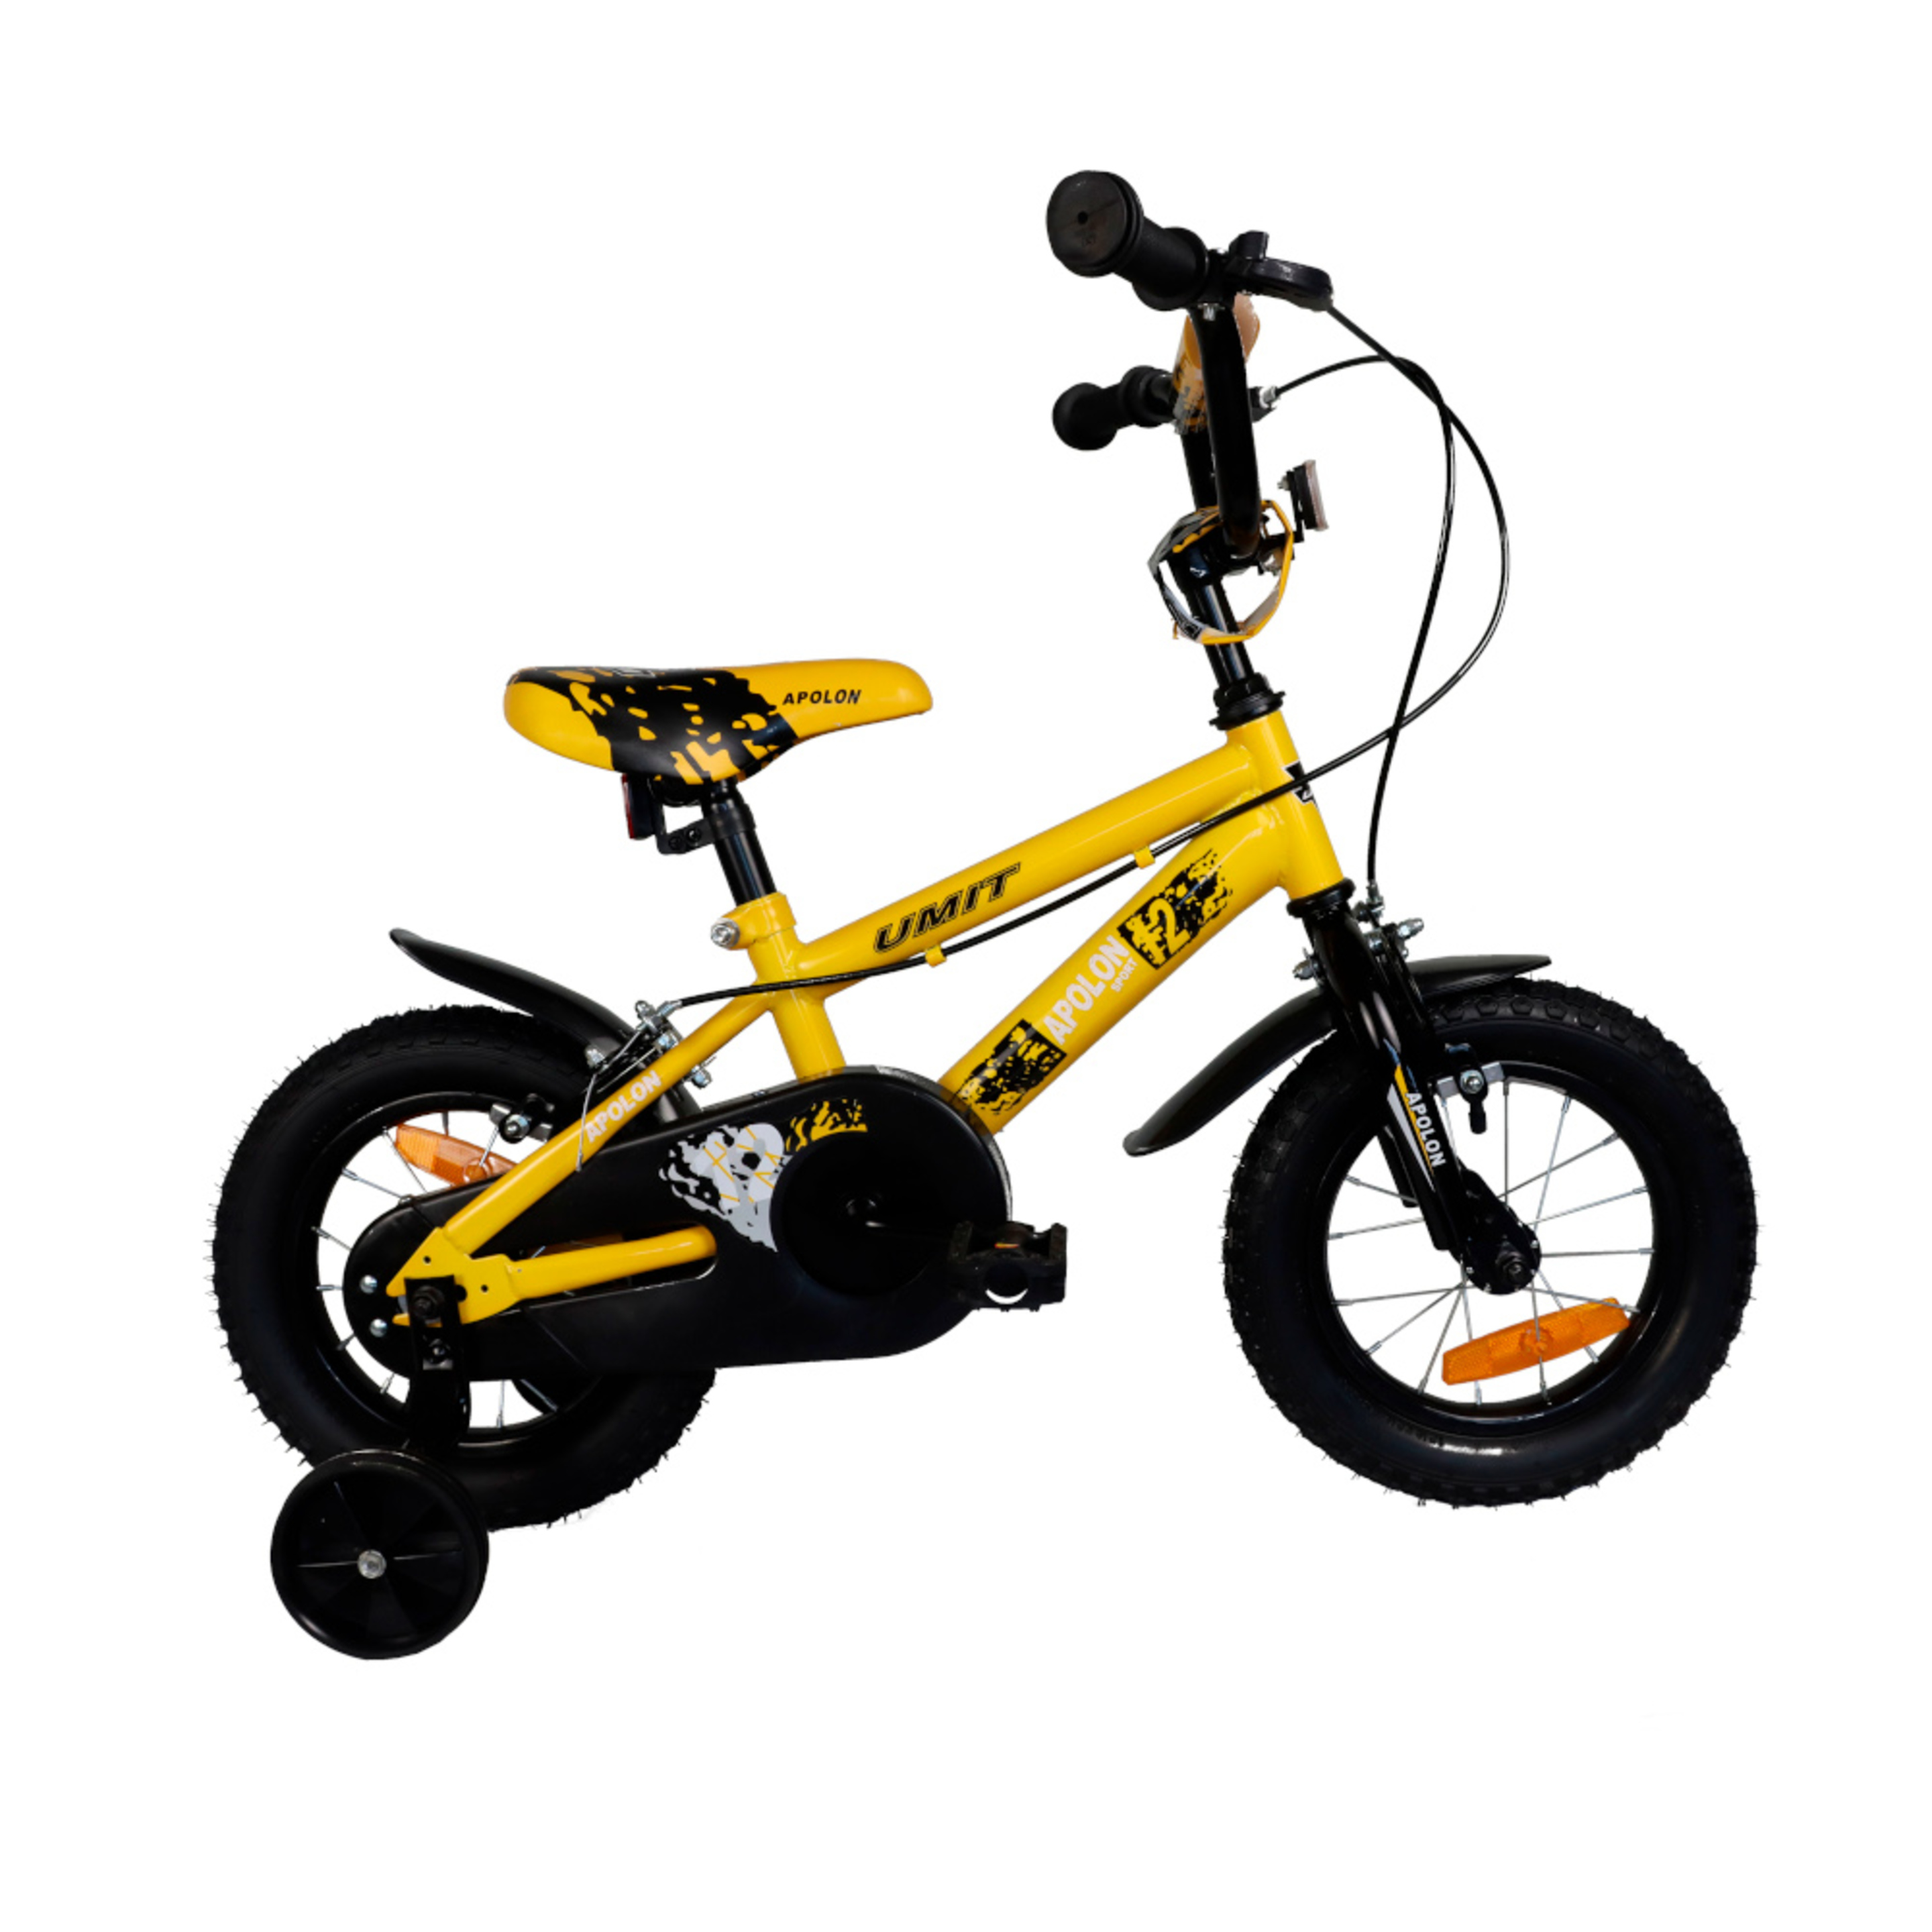 Apolon Yellow Kids Mountain Bike 12" - amarillo - 